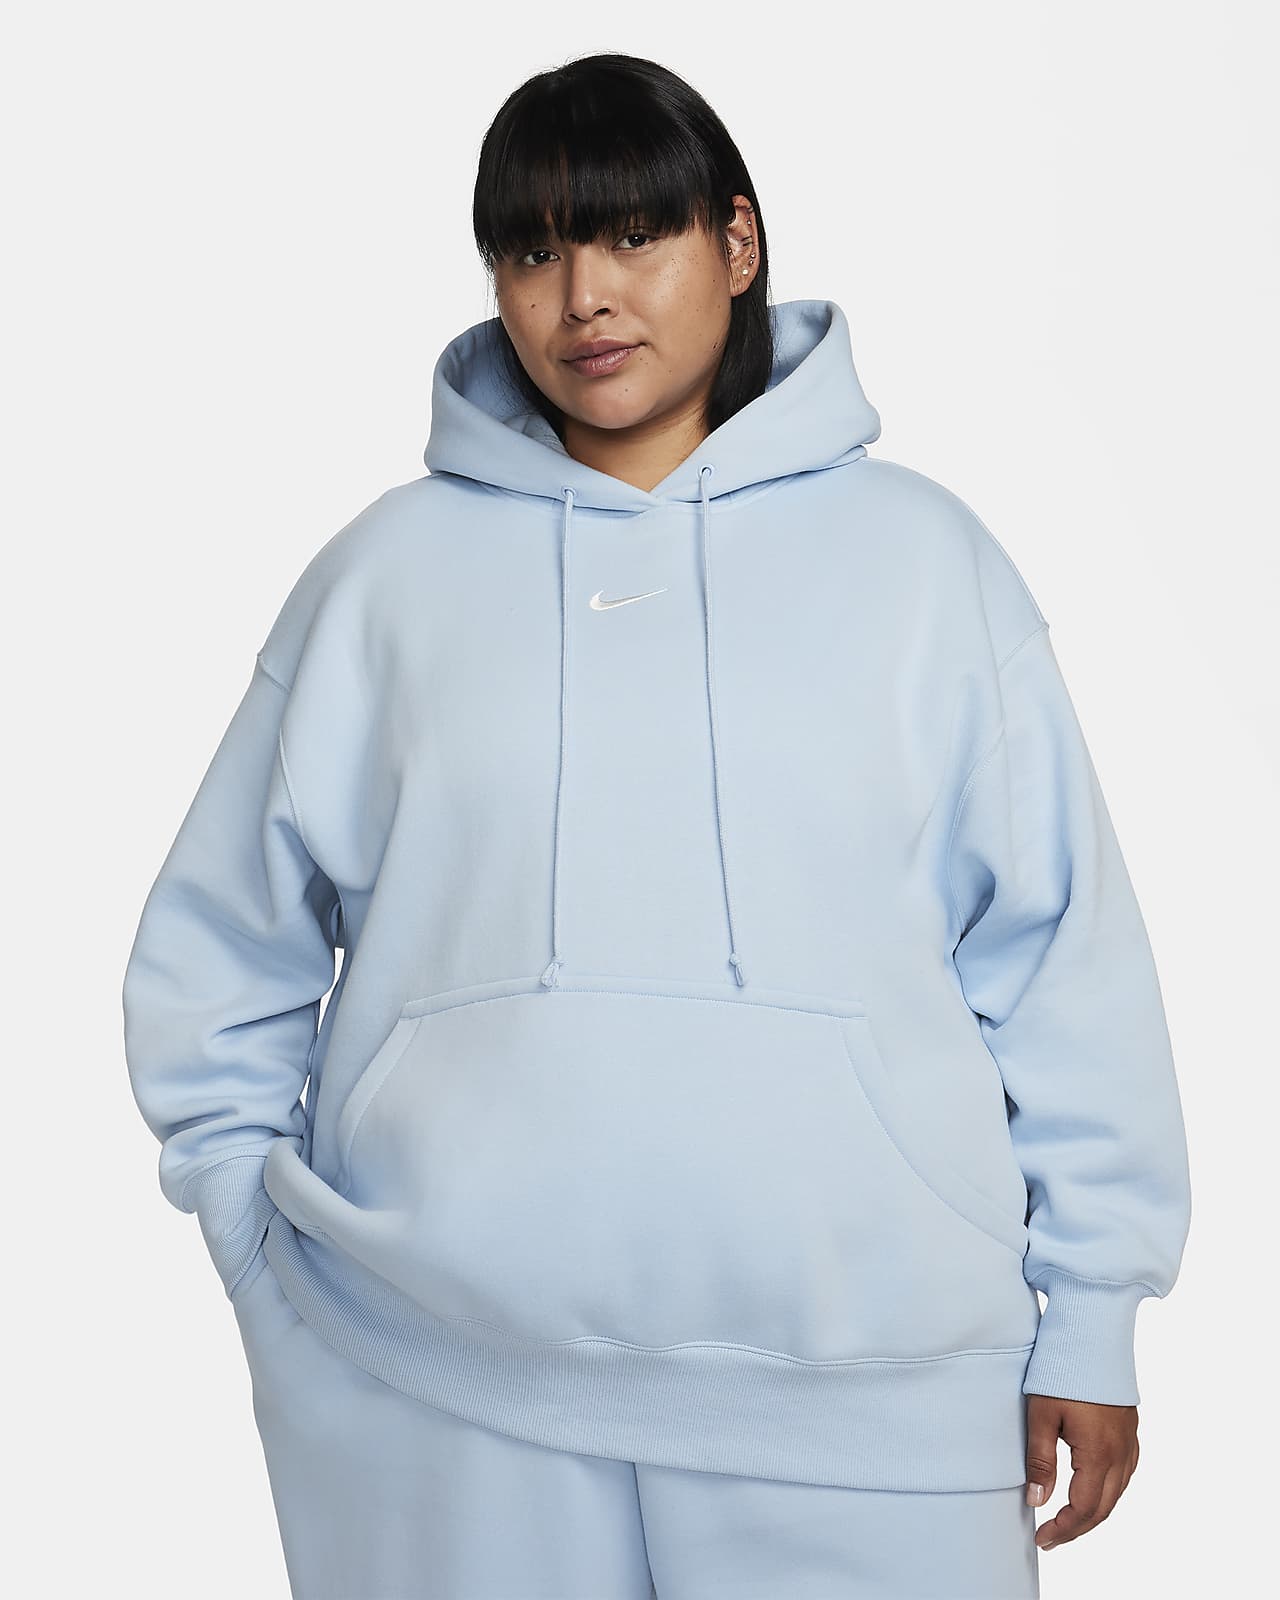 Oversized Hoodies & Sweatshirts. Nike SG